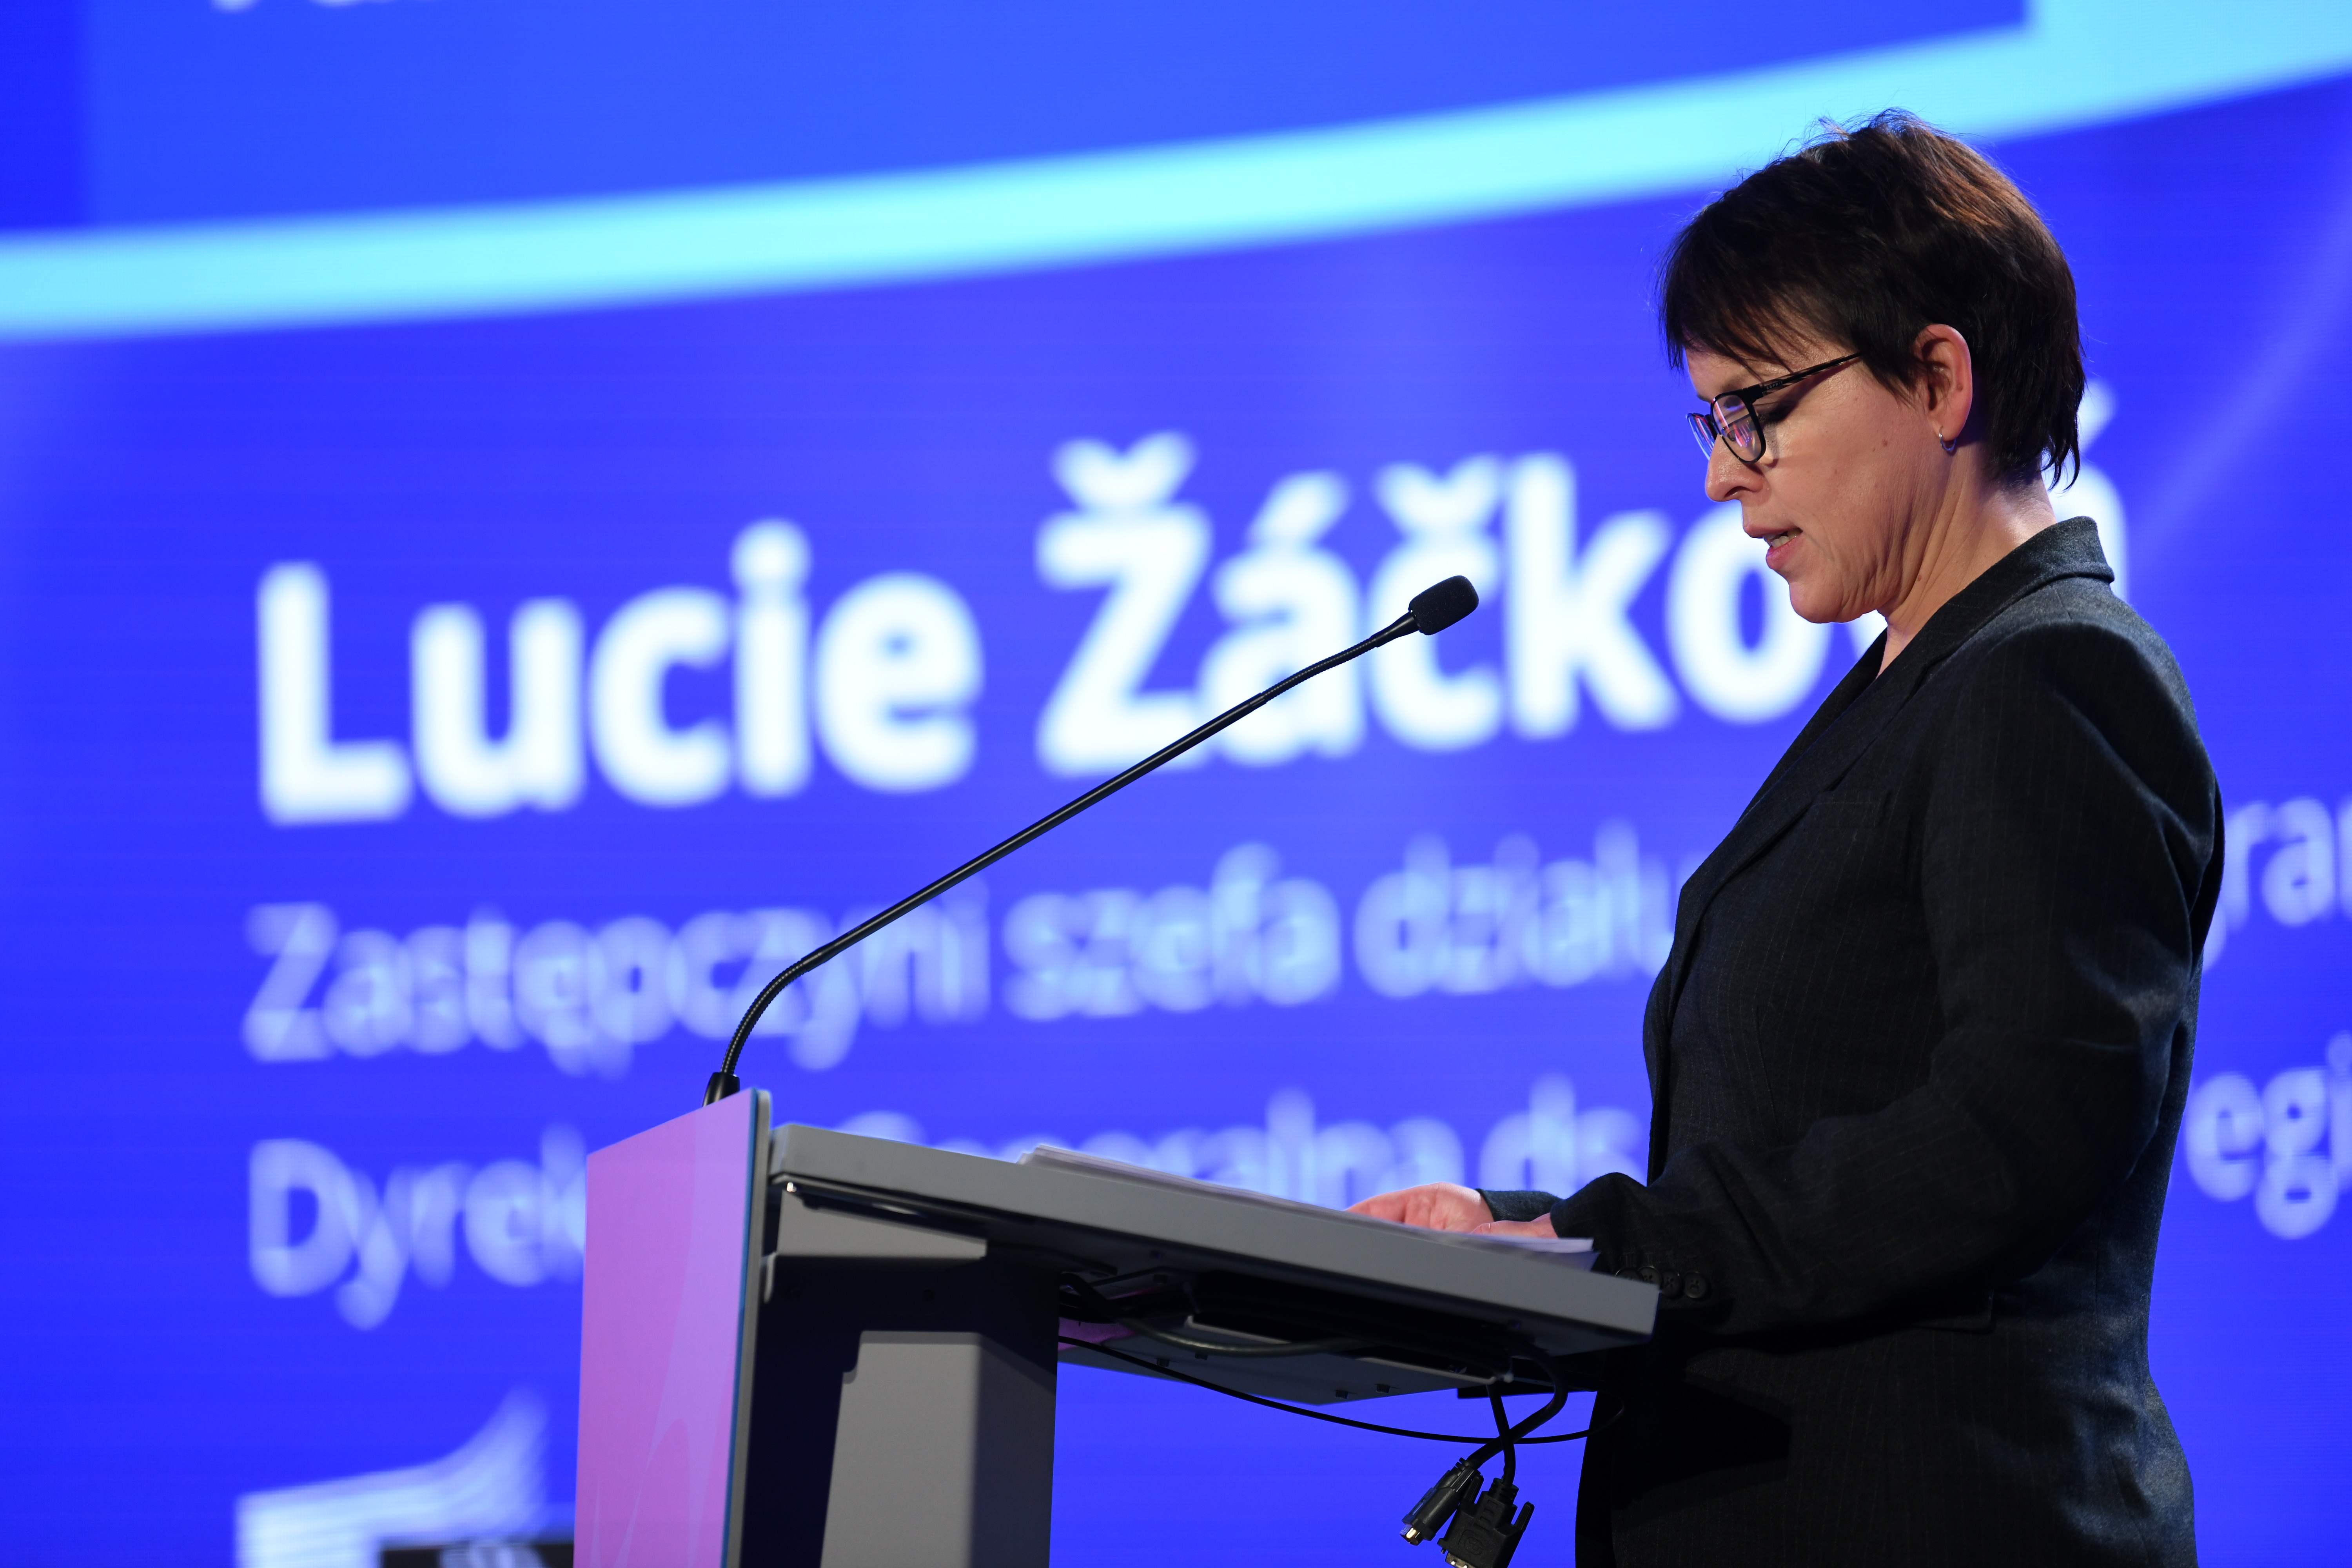 Konferencja inaugurująca program Fundusze Europejskie dla Lubelskiego 2021-2027